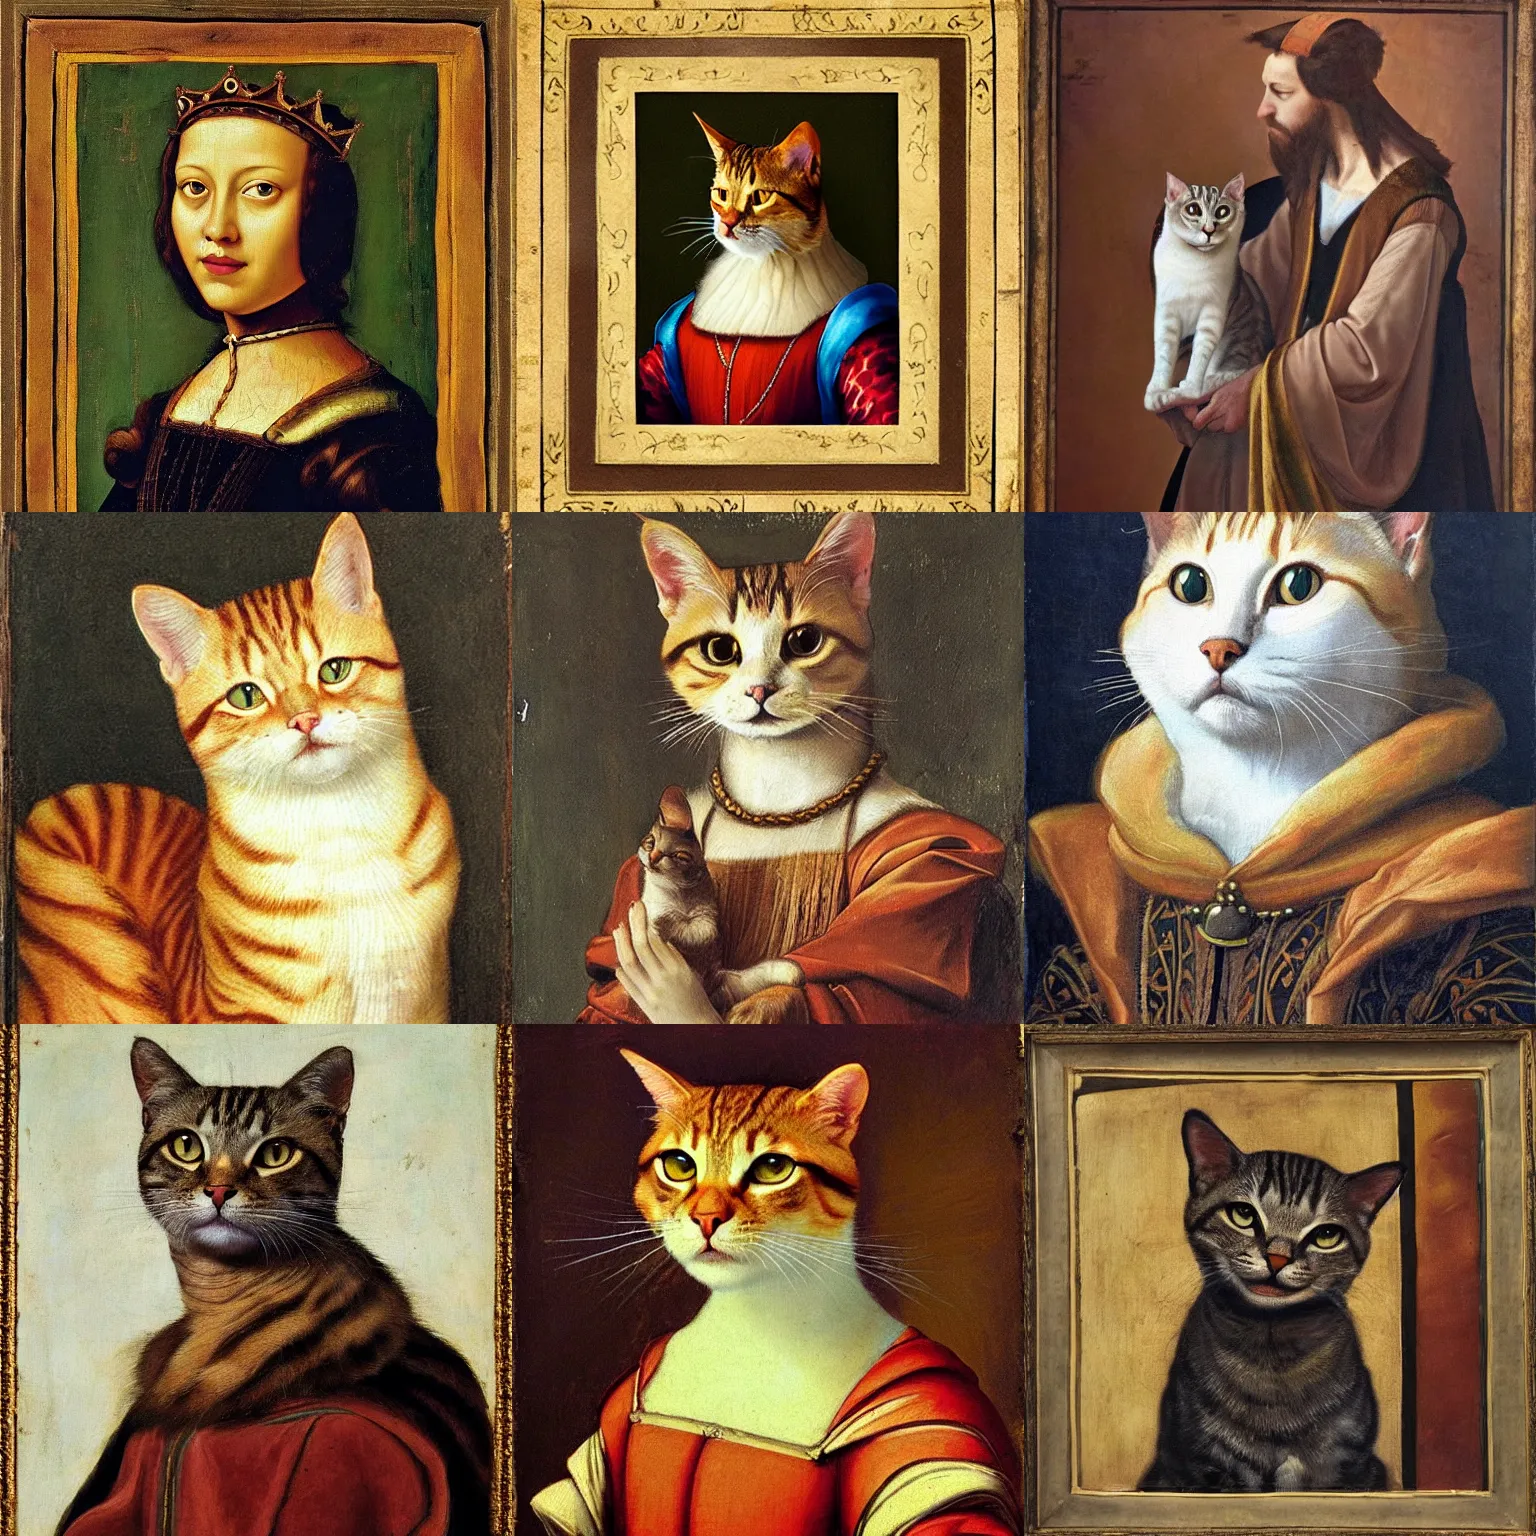 Prompt: a king cat portrait, renaissance painting style